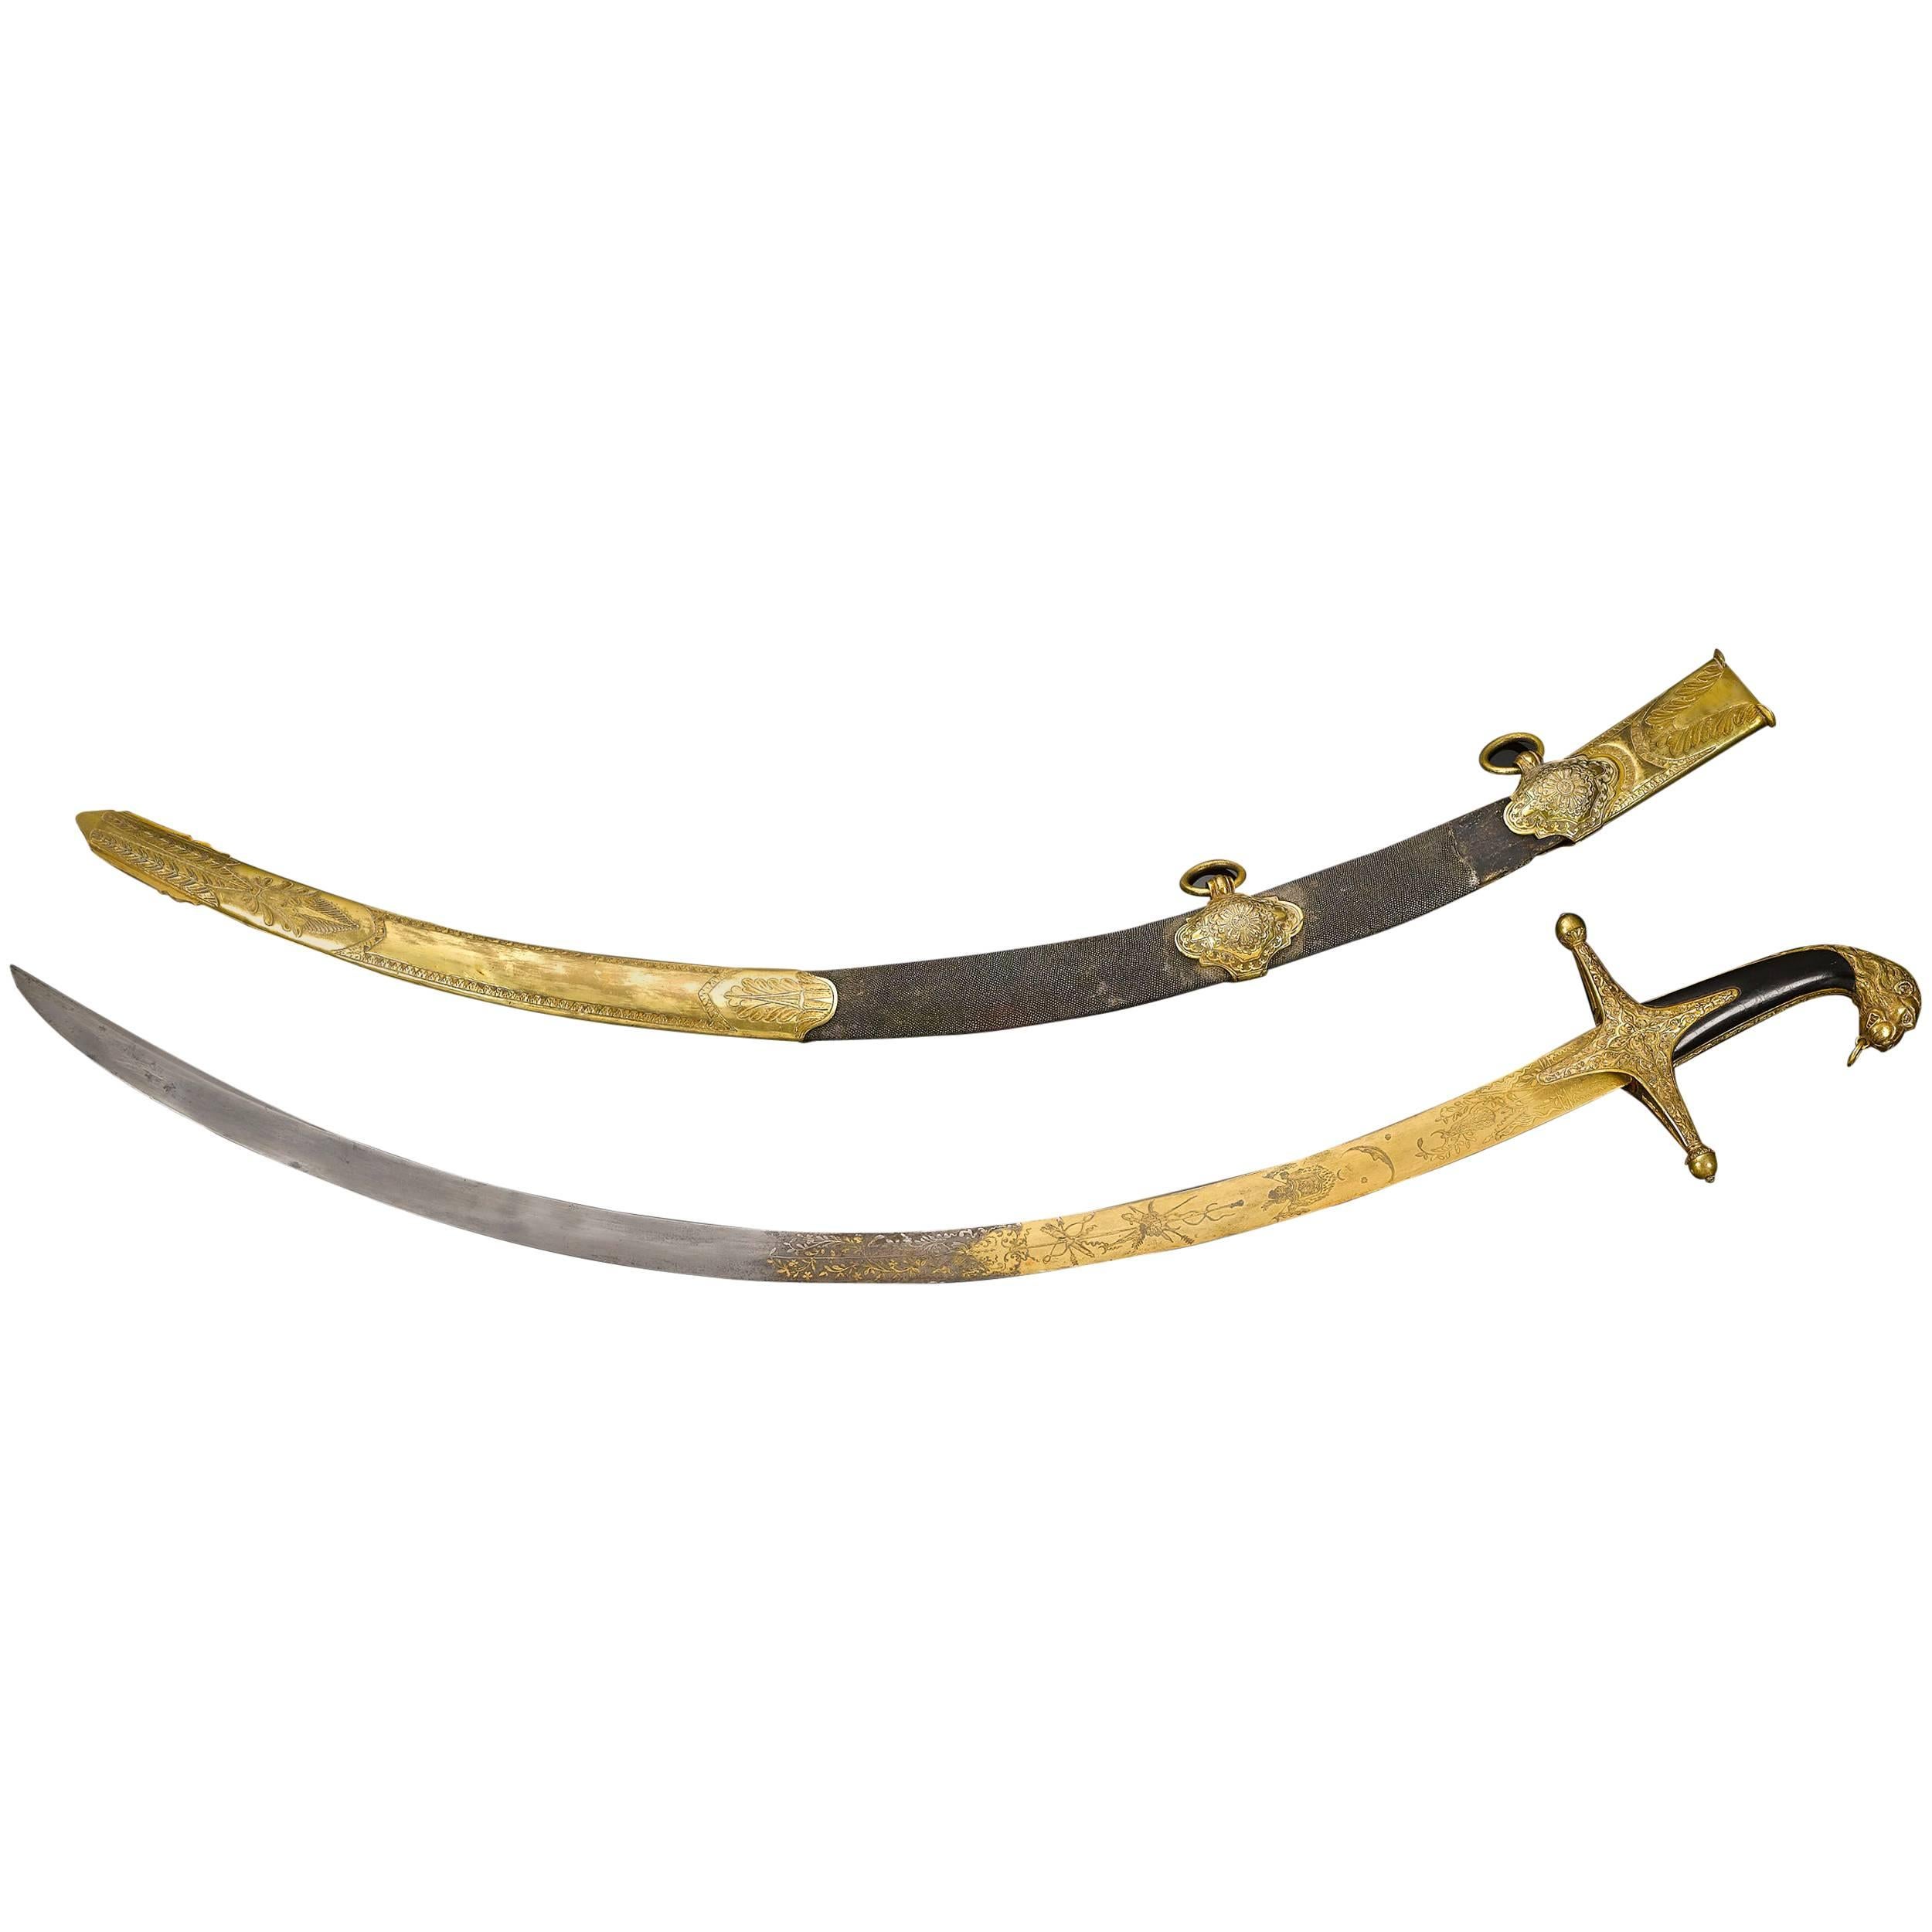 Mameluke Sabre Sword